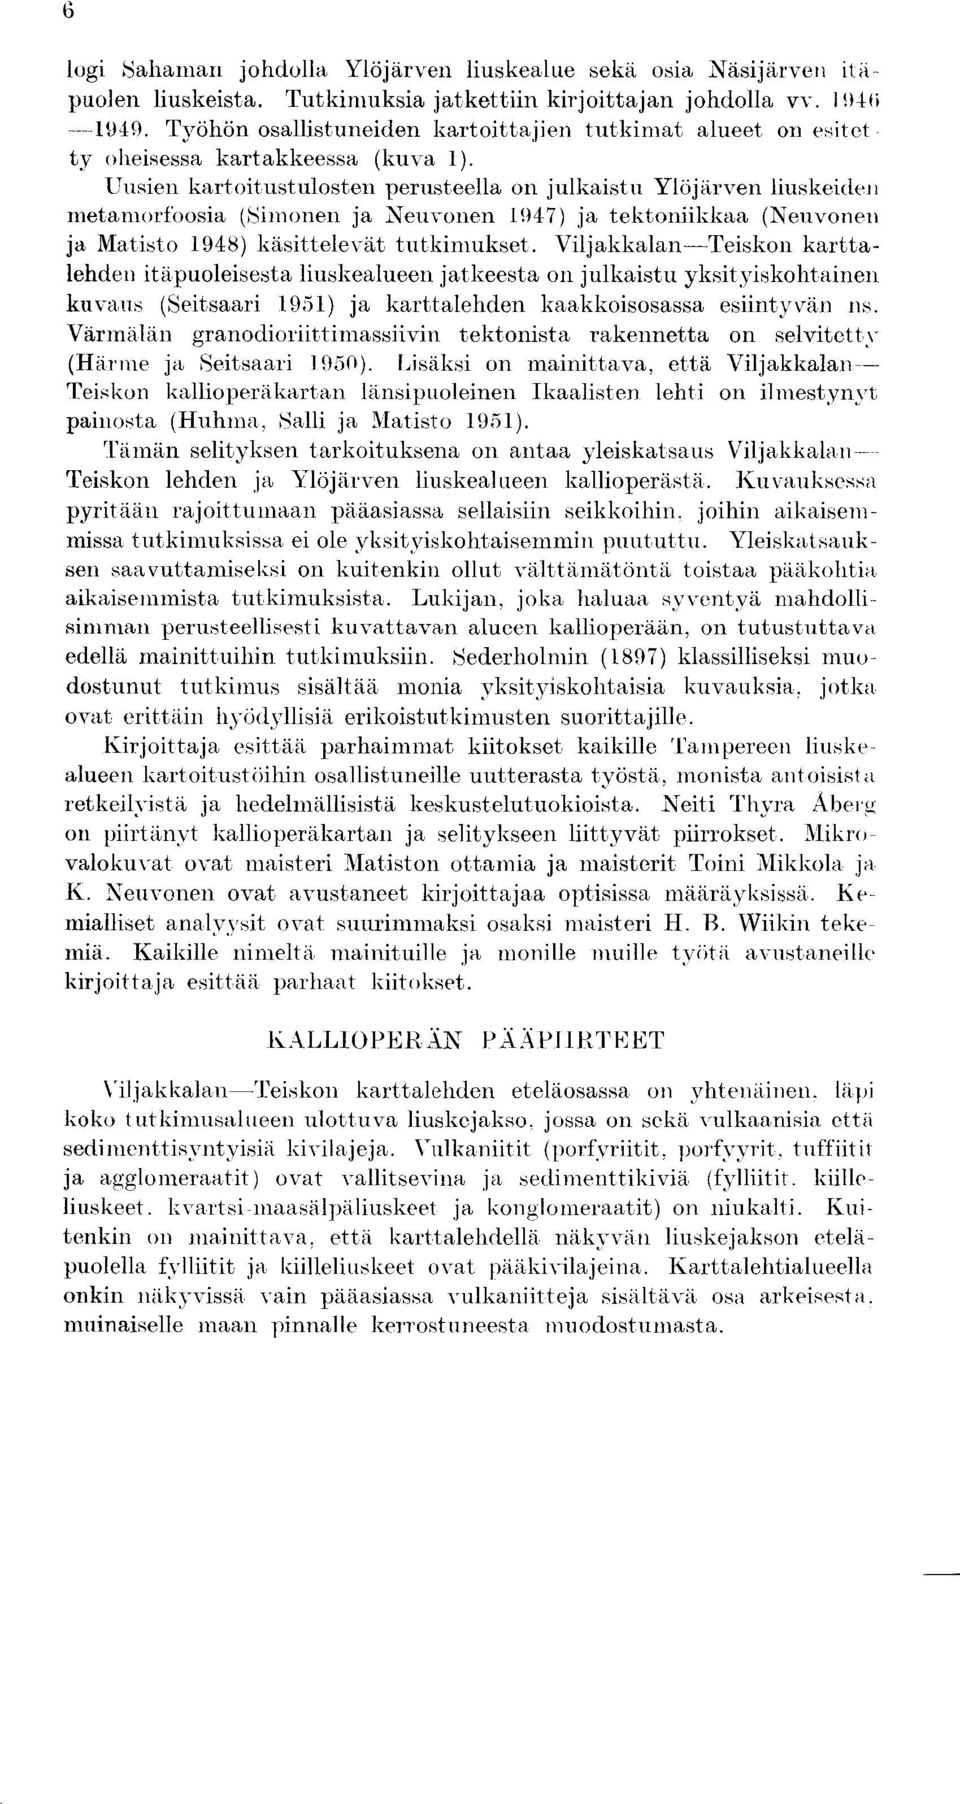 Uusien kartoitustulosten perusteella on julkaistu Ylojarven liuskeiden metamorfoosia (Simonen ja Neuvonen 1947) ja tektoniikkaa (Neuvonen ja Matisto 1948) kasittelevat tutkiniukset.